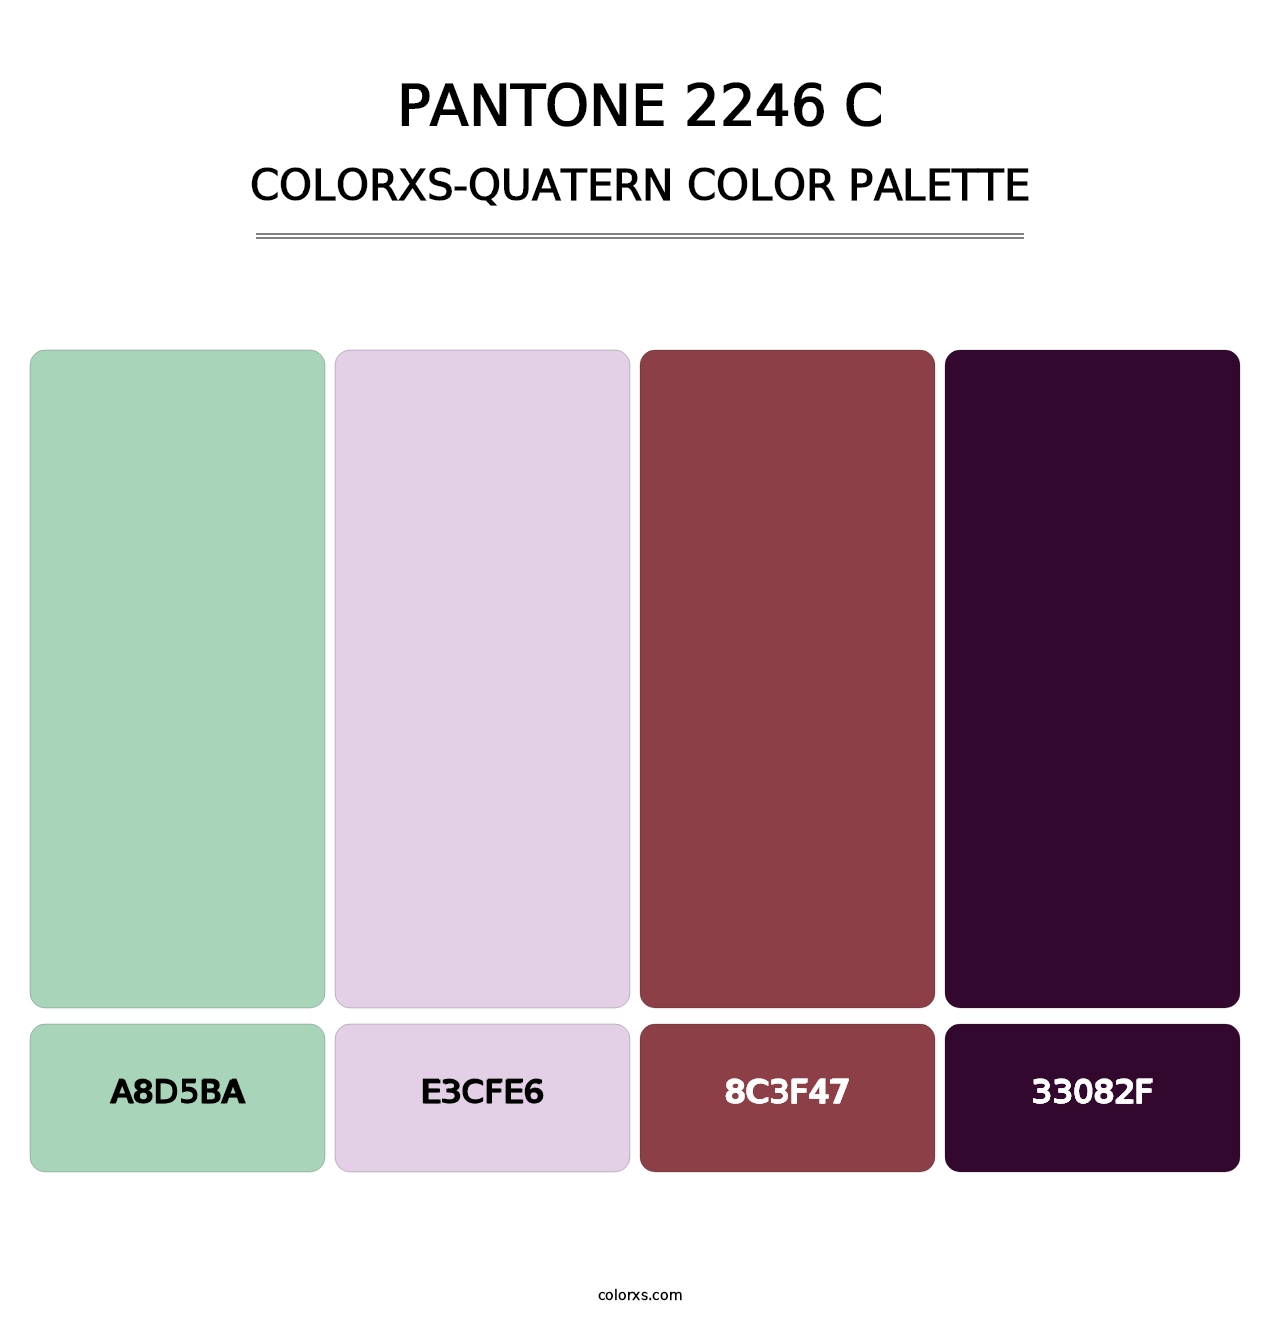 PANTONE 2246 C - Colorxs Quatern Palette